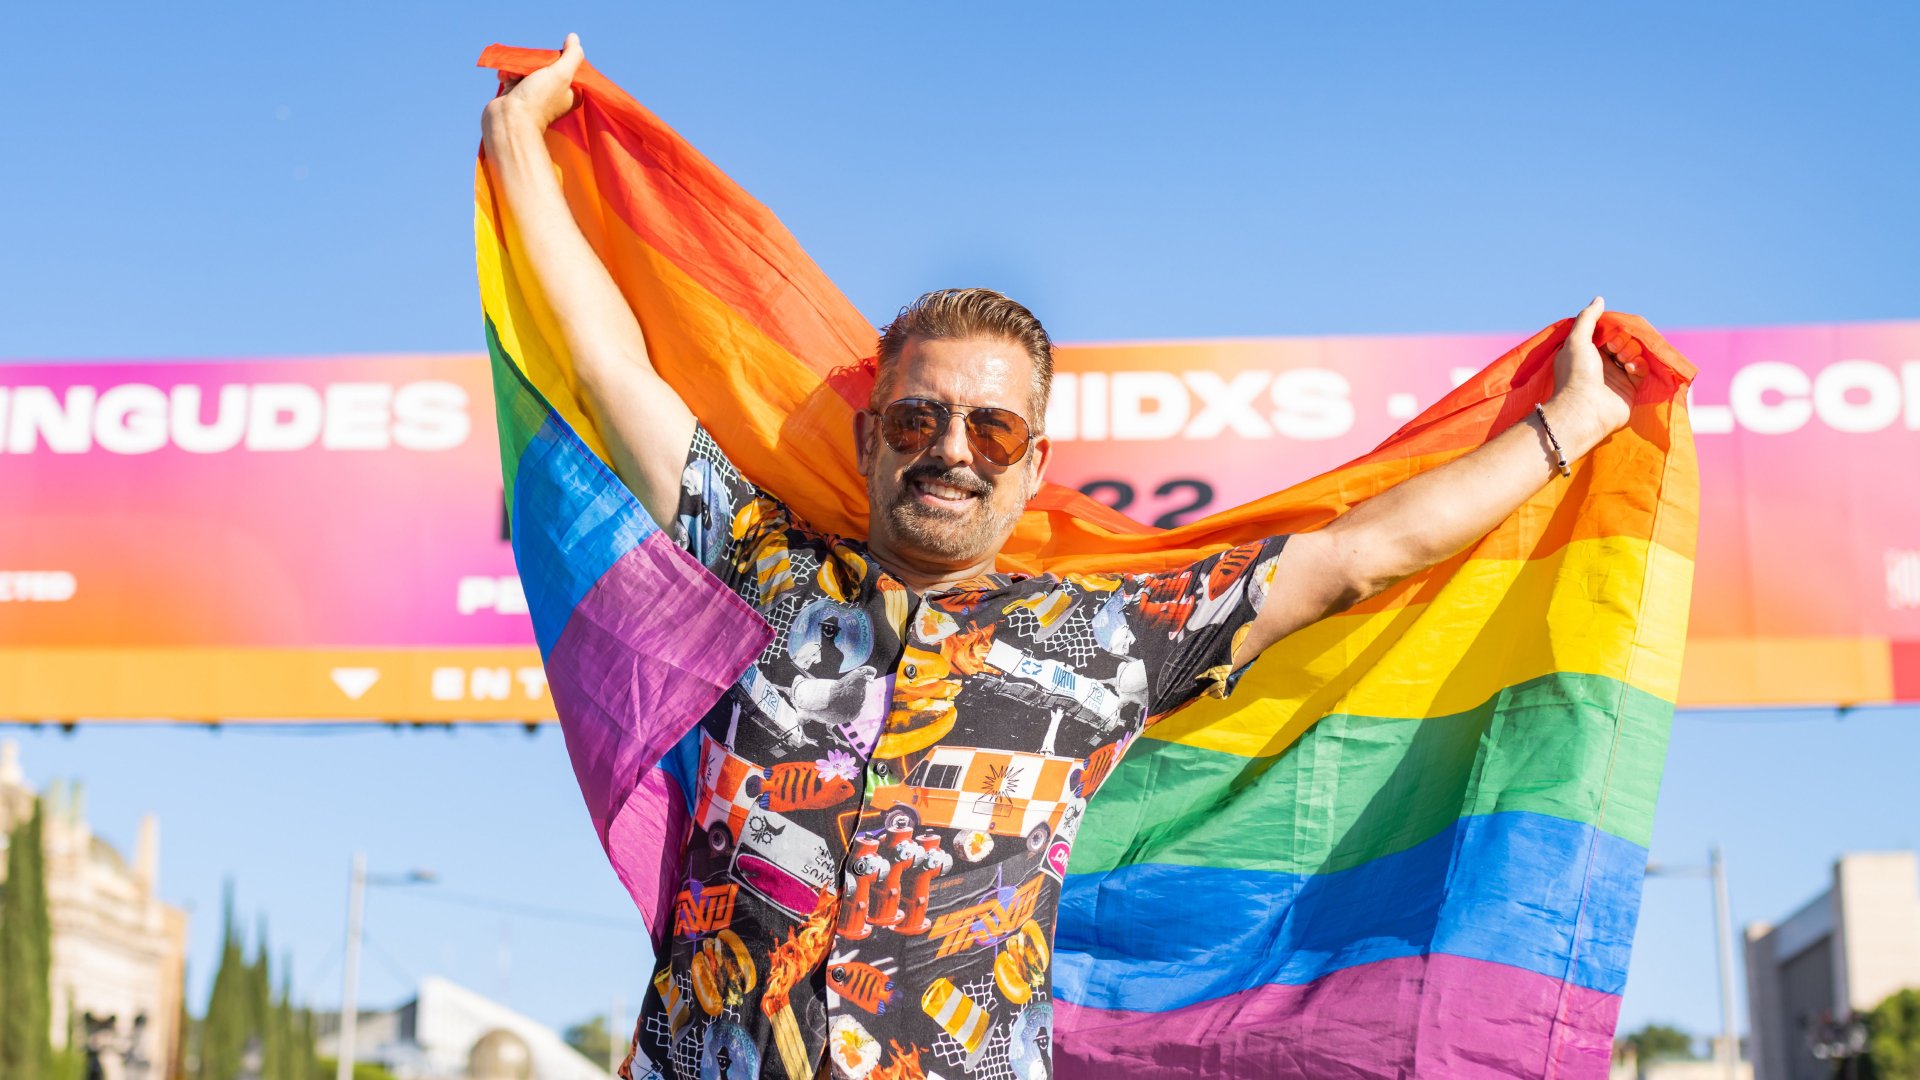 Orgull LGTBIQ+ 2023: activitats, concerts i desfilades del Pride a les principals ciutats